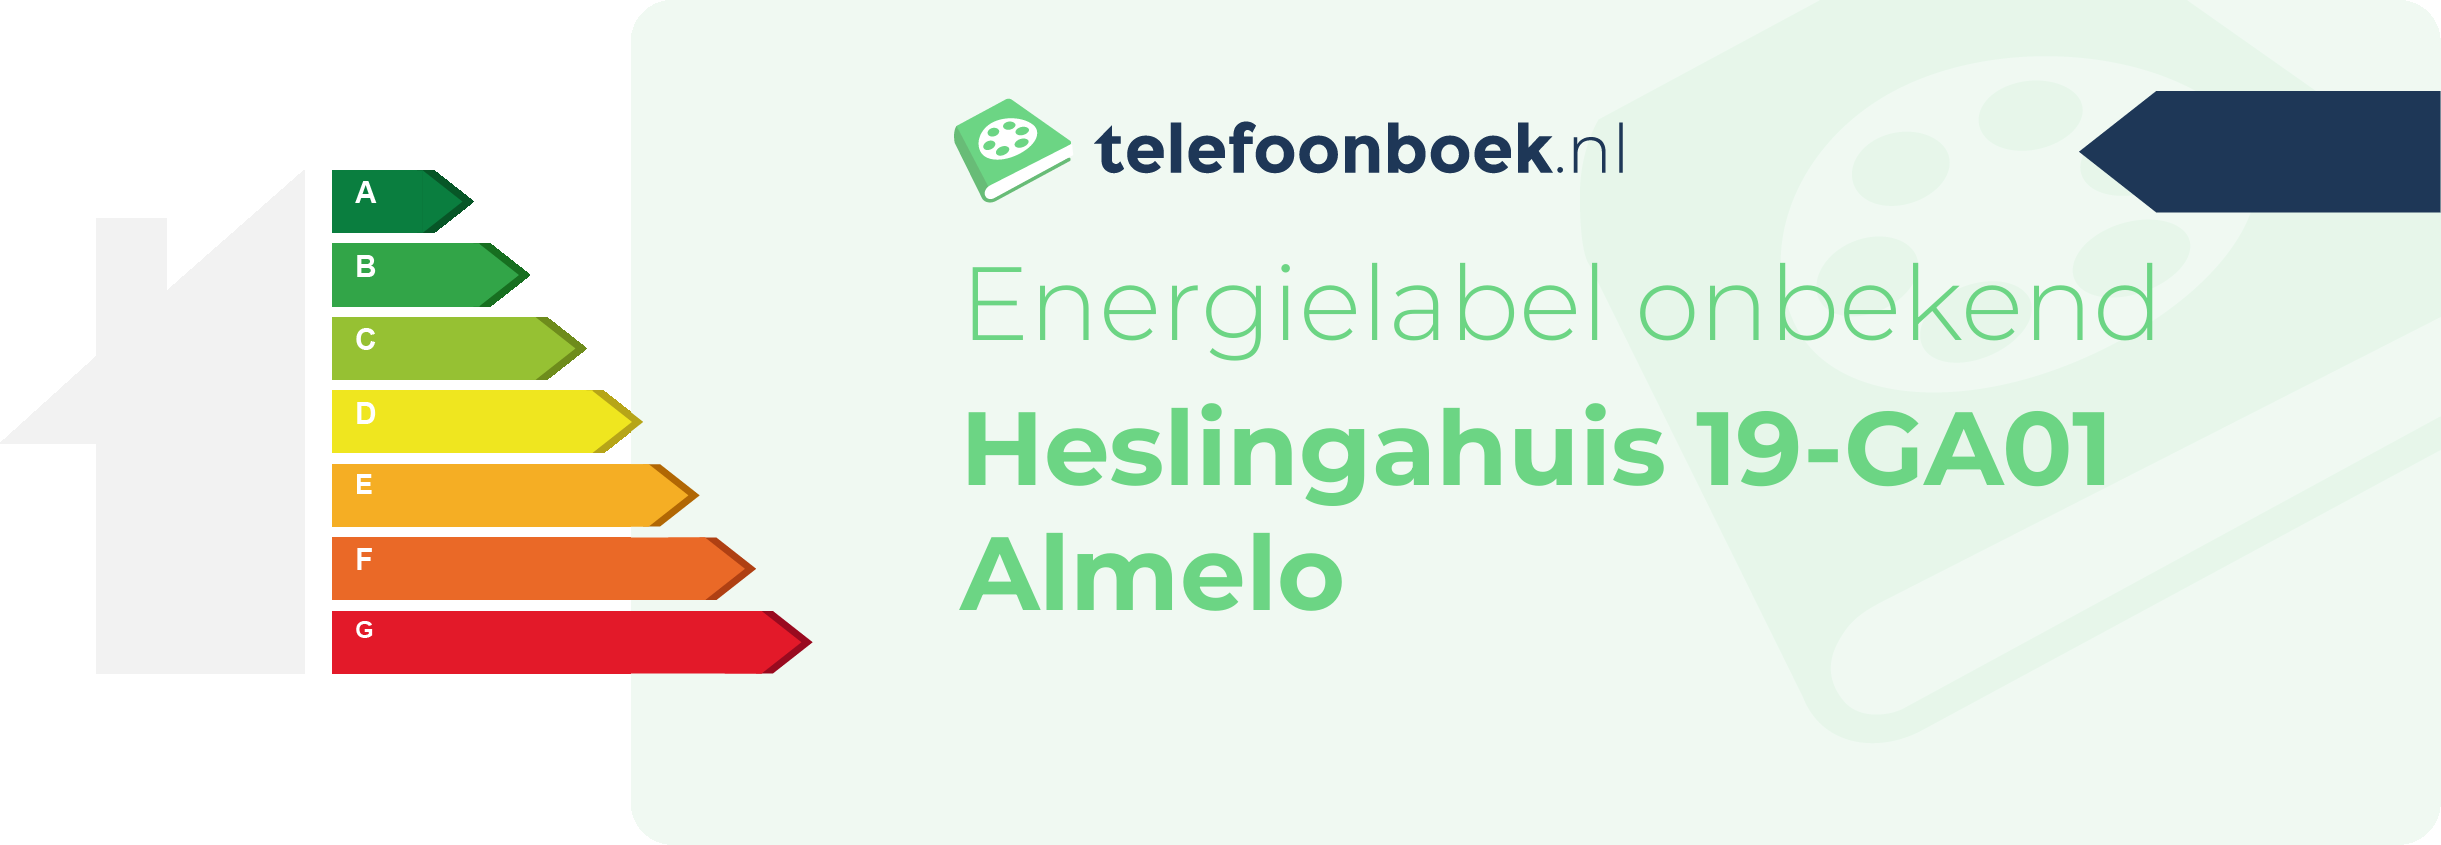 Energielabel Heslingahuis 19-GA01 Almelo